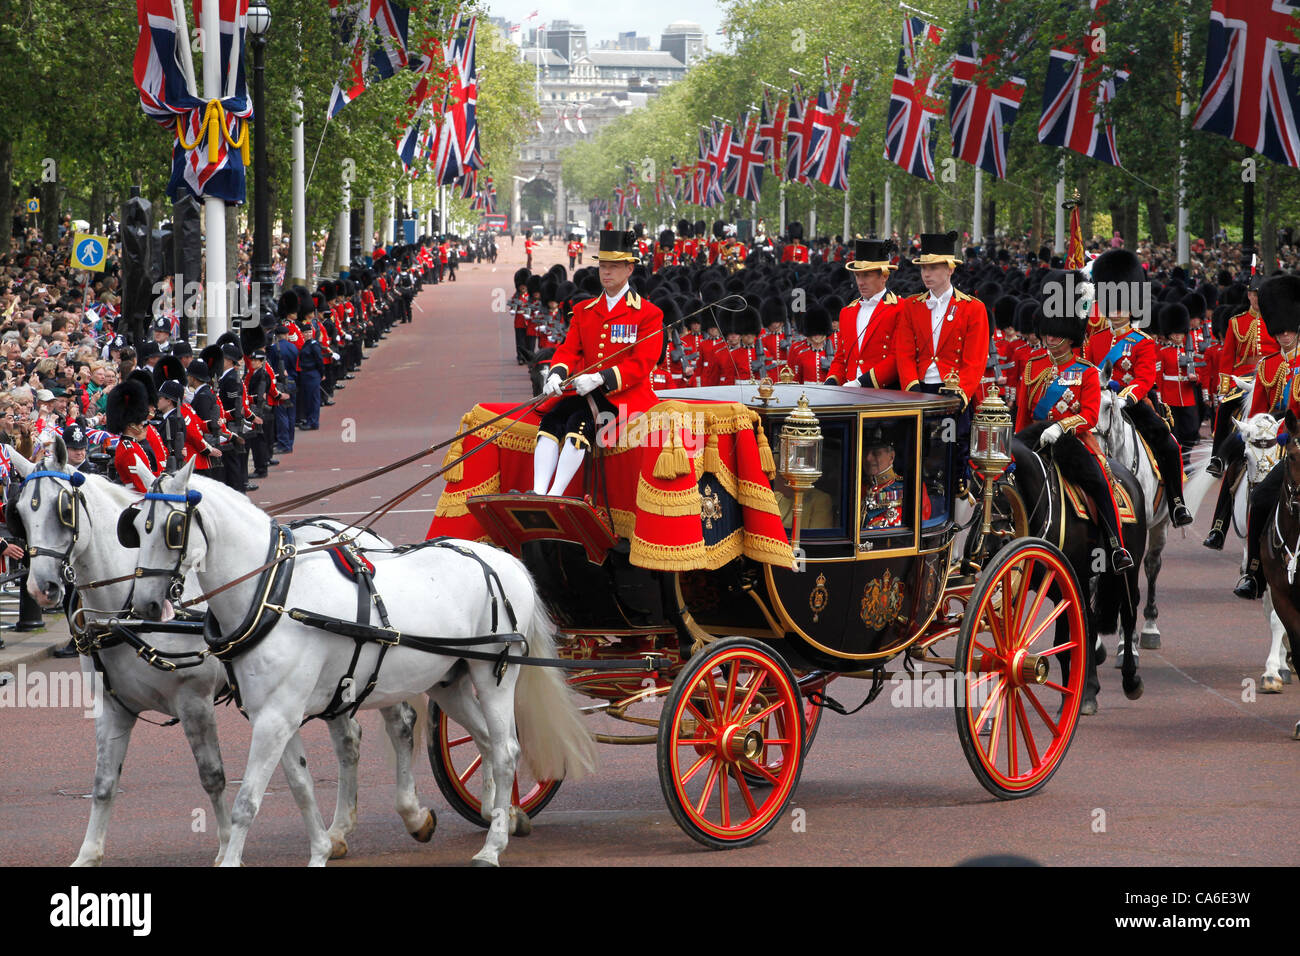 La reine Elizabeth II et le Prince Philip retour à Buckingham Palace à partir de la couleur de la parade de la cérémonie Banque D'Images